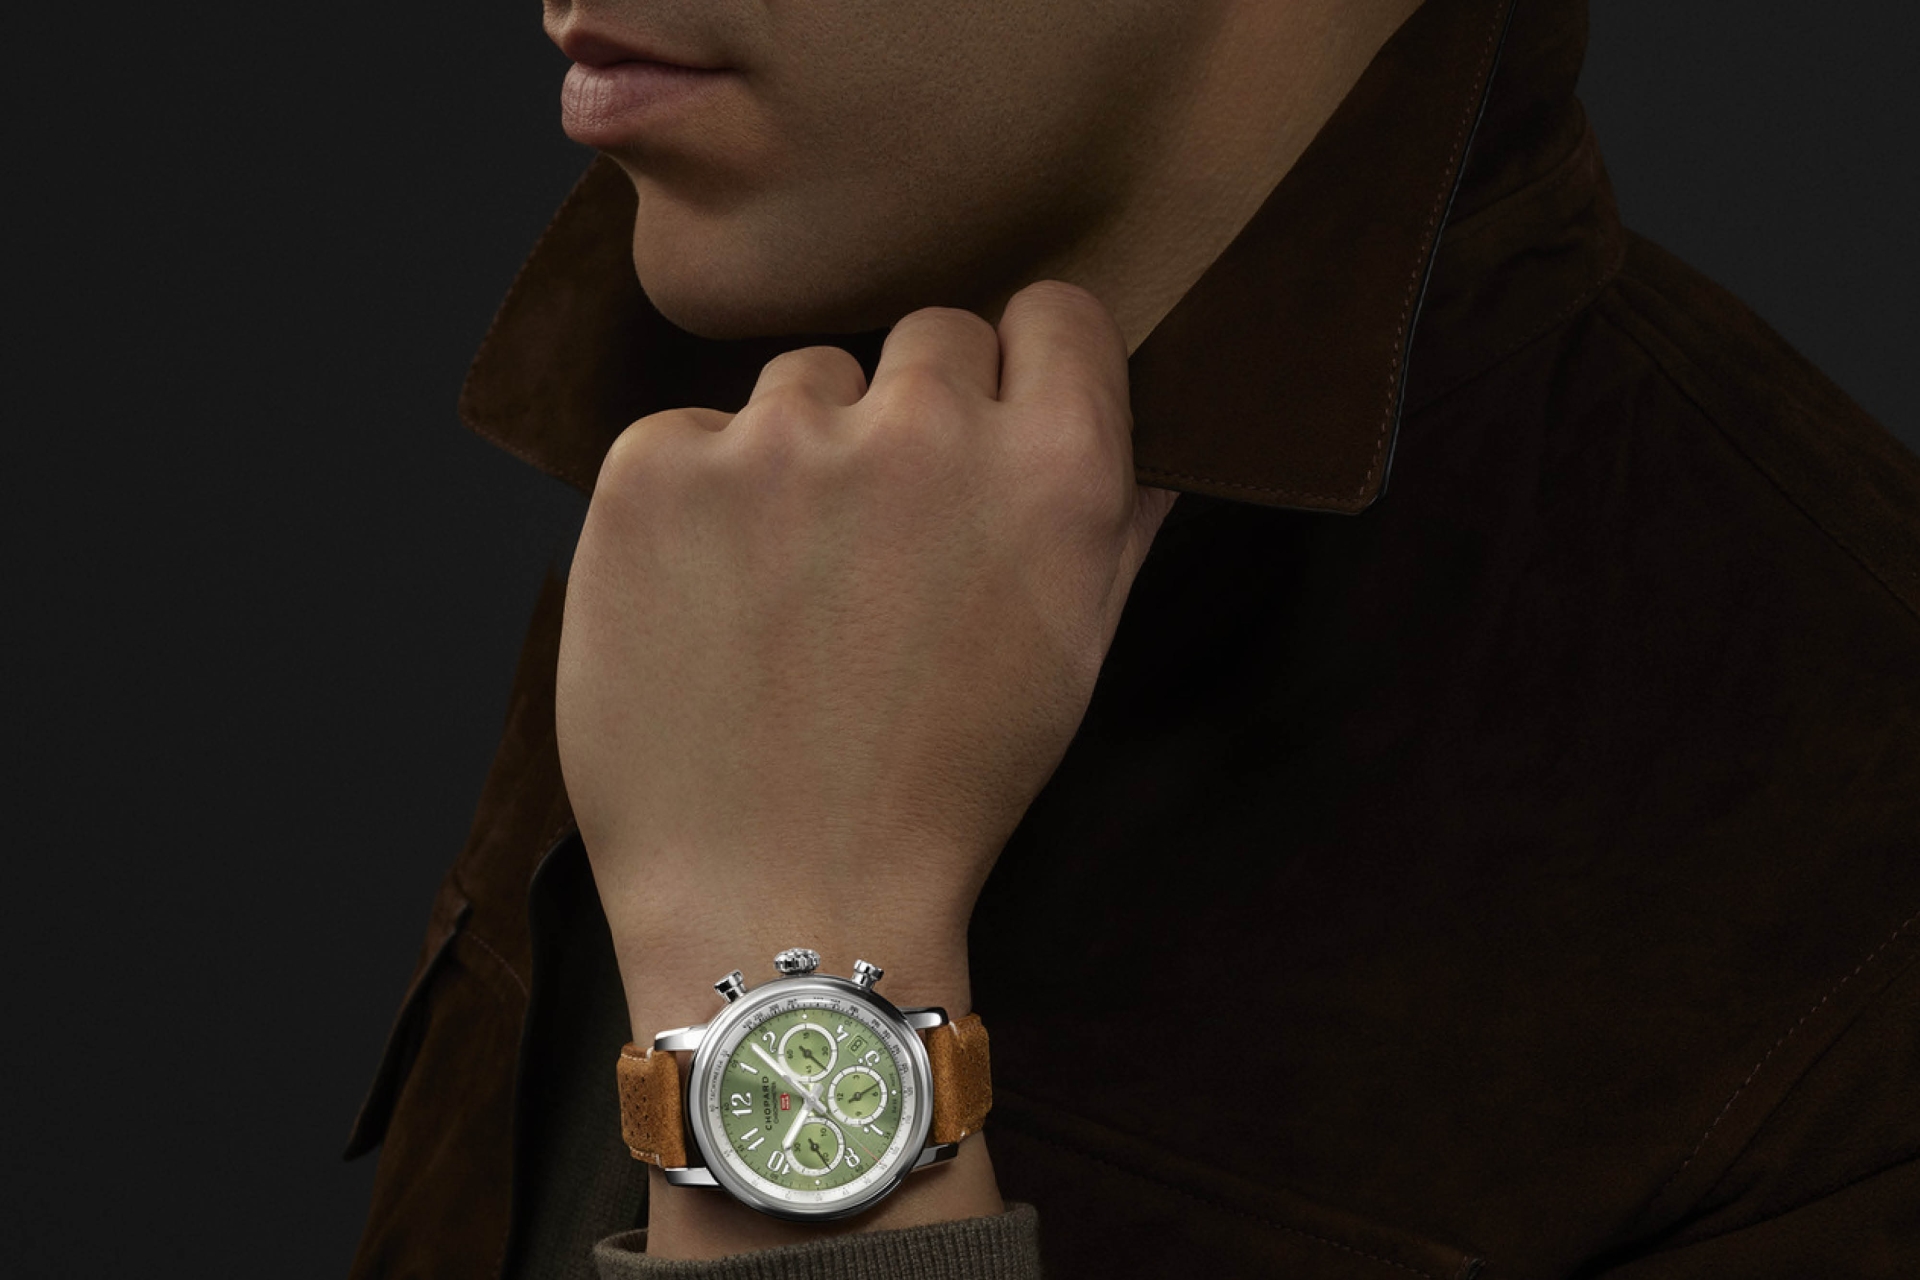 1920x1280-man-autumn-watch-watchlover-chopard-luxury-luxurywatch2